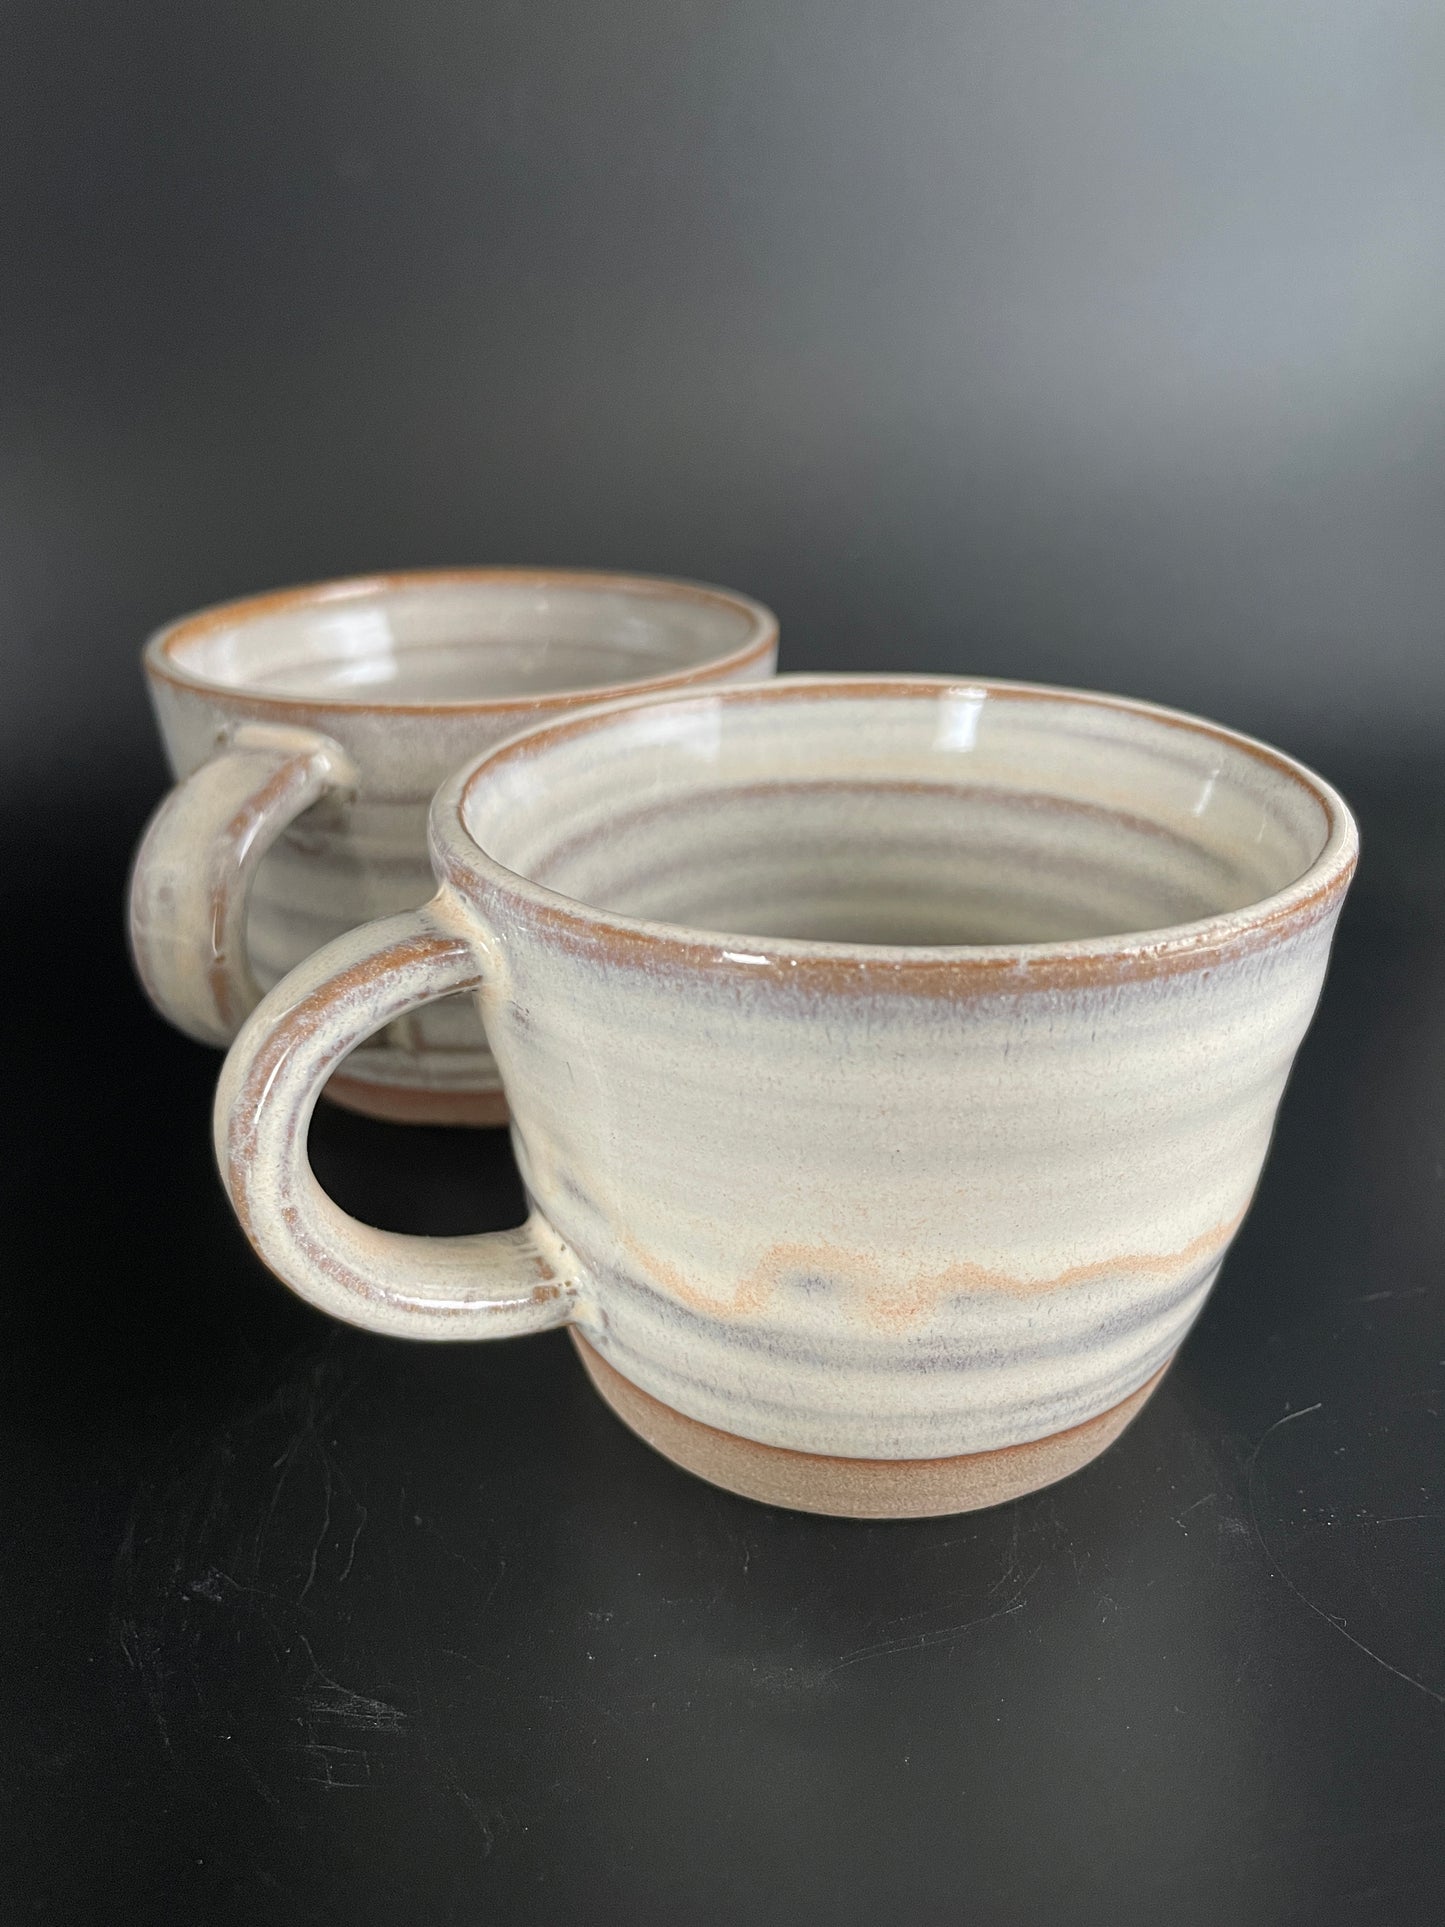 2 pinkish mugs - small/6oz